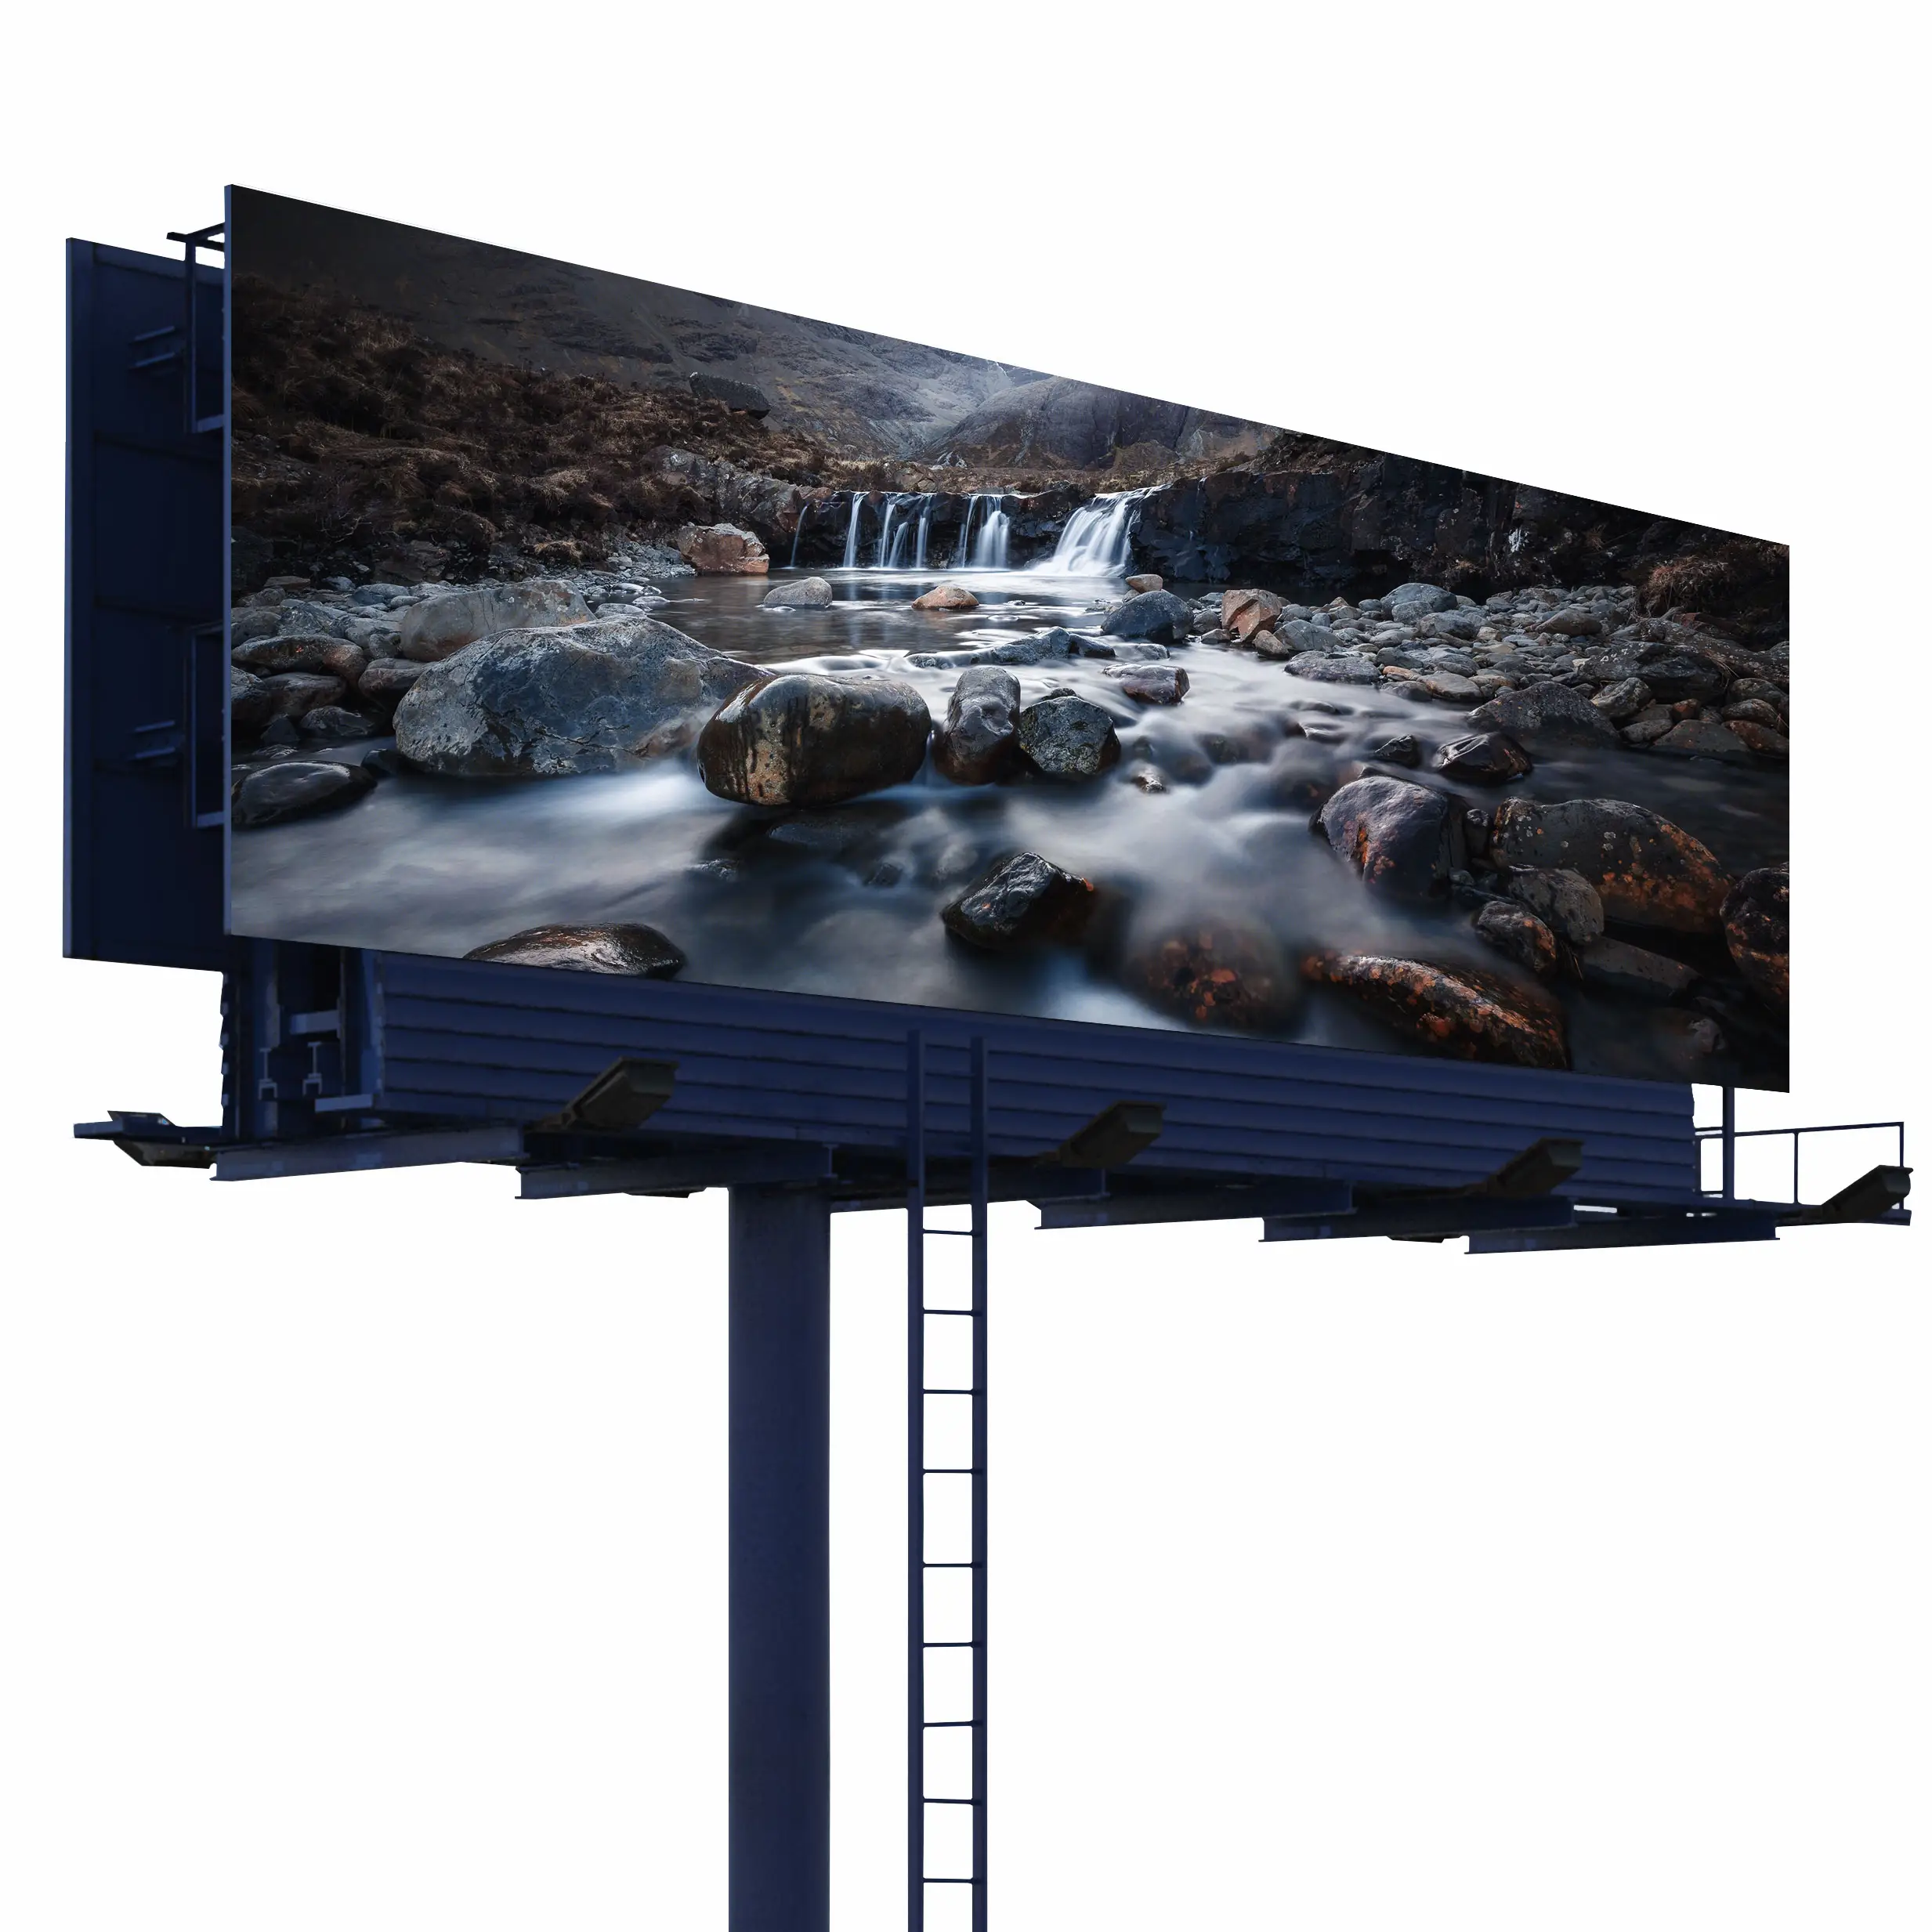 Cartelera digital electrónica P10 P8, pantalla led para publicidad al aire libre, resistente al agua